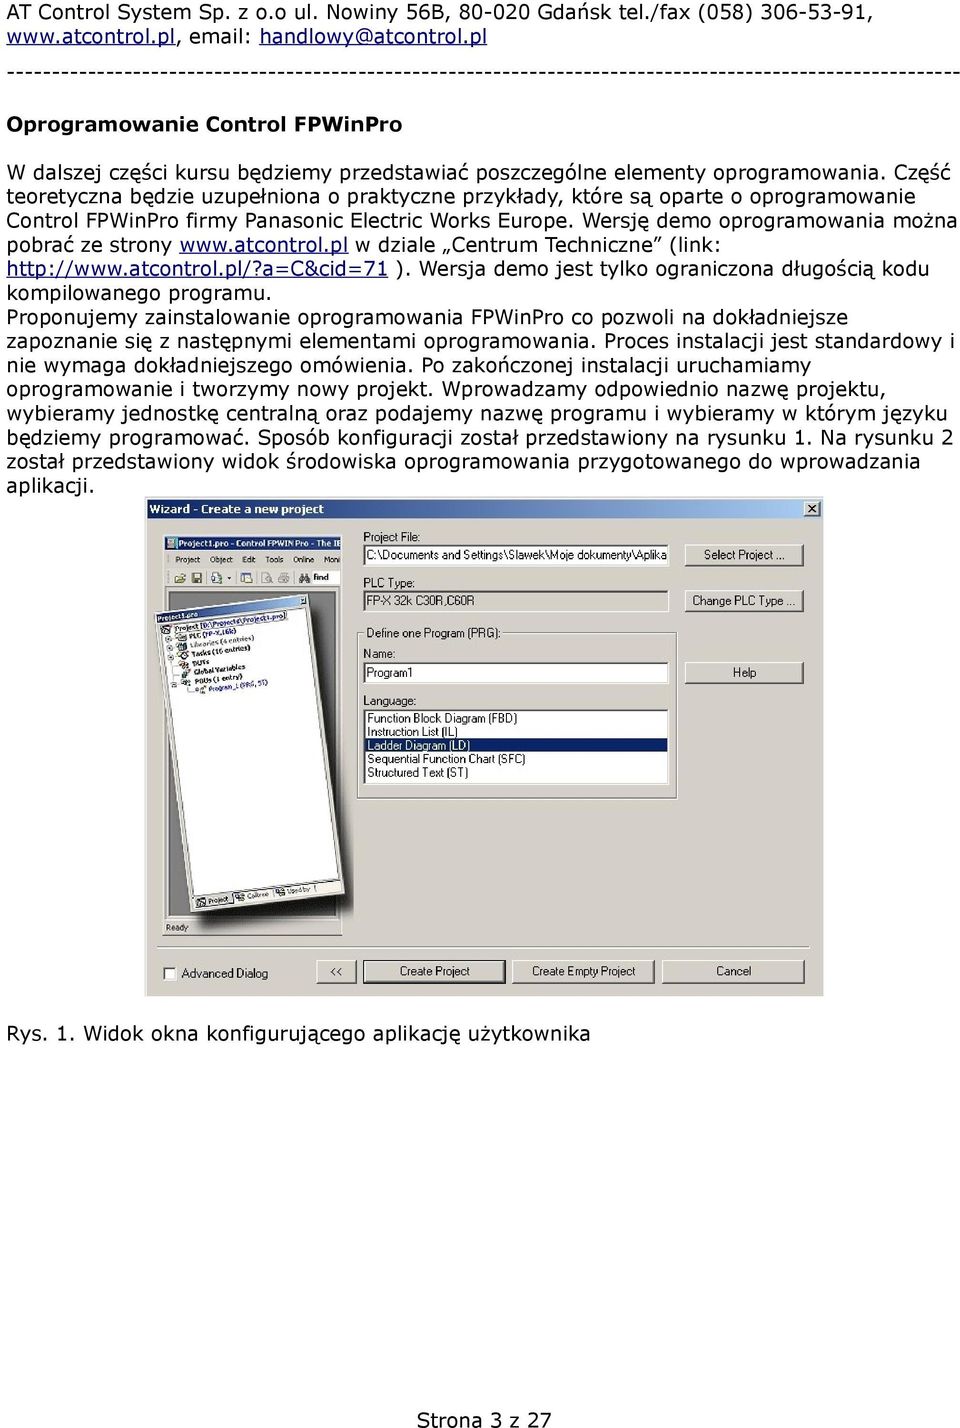 Wersję demo oprogramowania można pobrać ze strony www.atcontrol.pl w dziale Centrum Techniczne (link: http://www.atcontrol.pl/?a=c&cid=71 ).